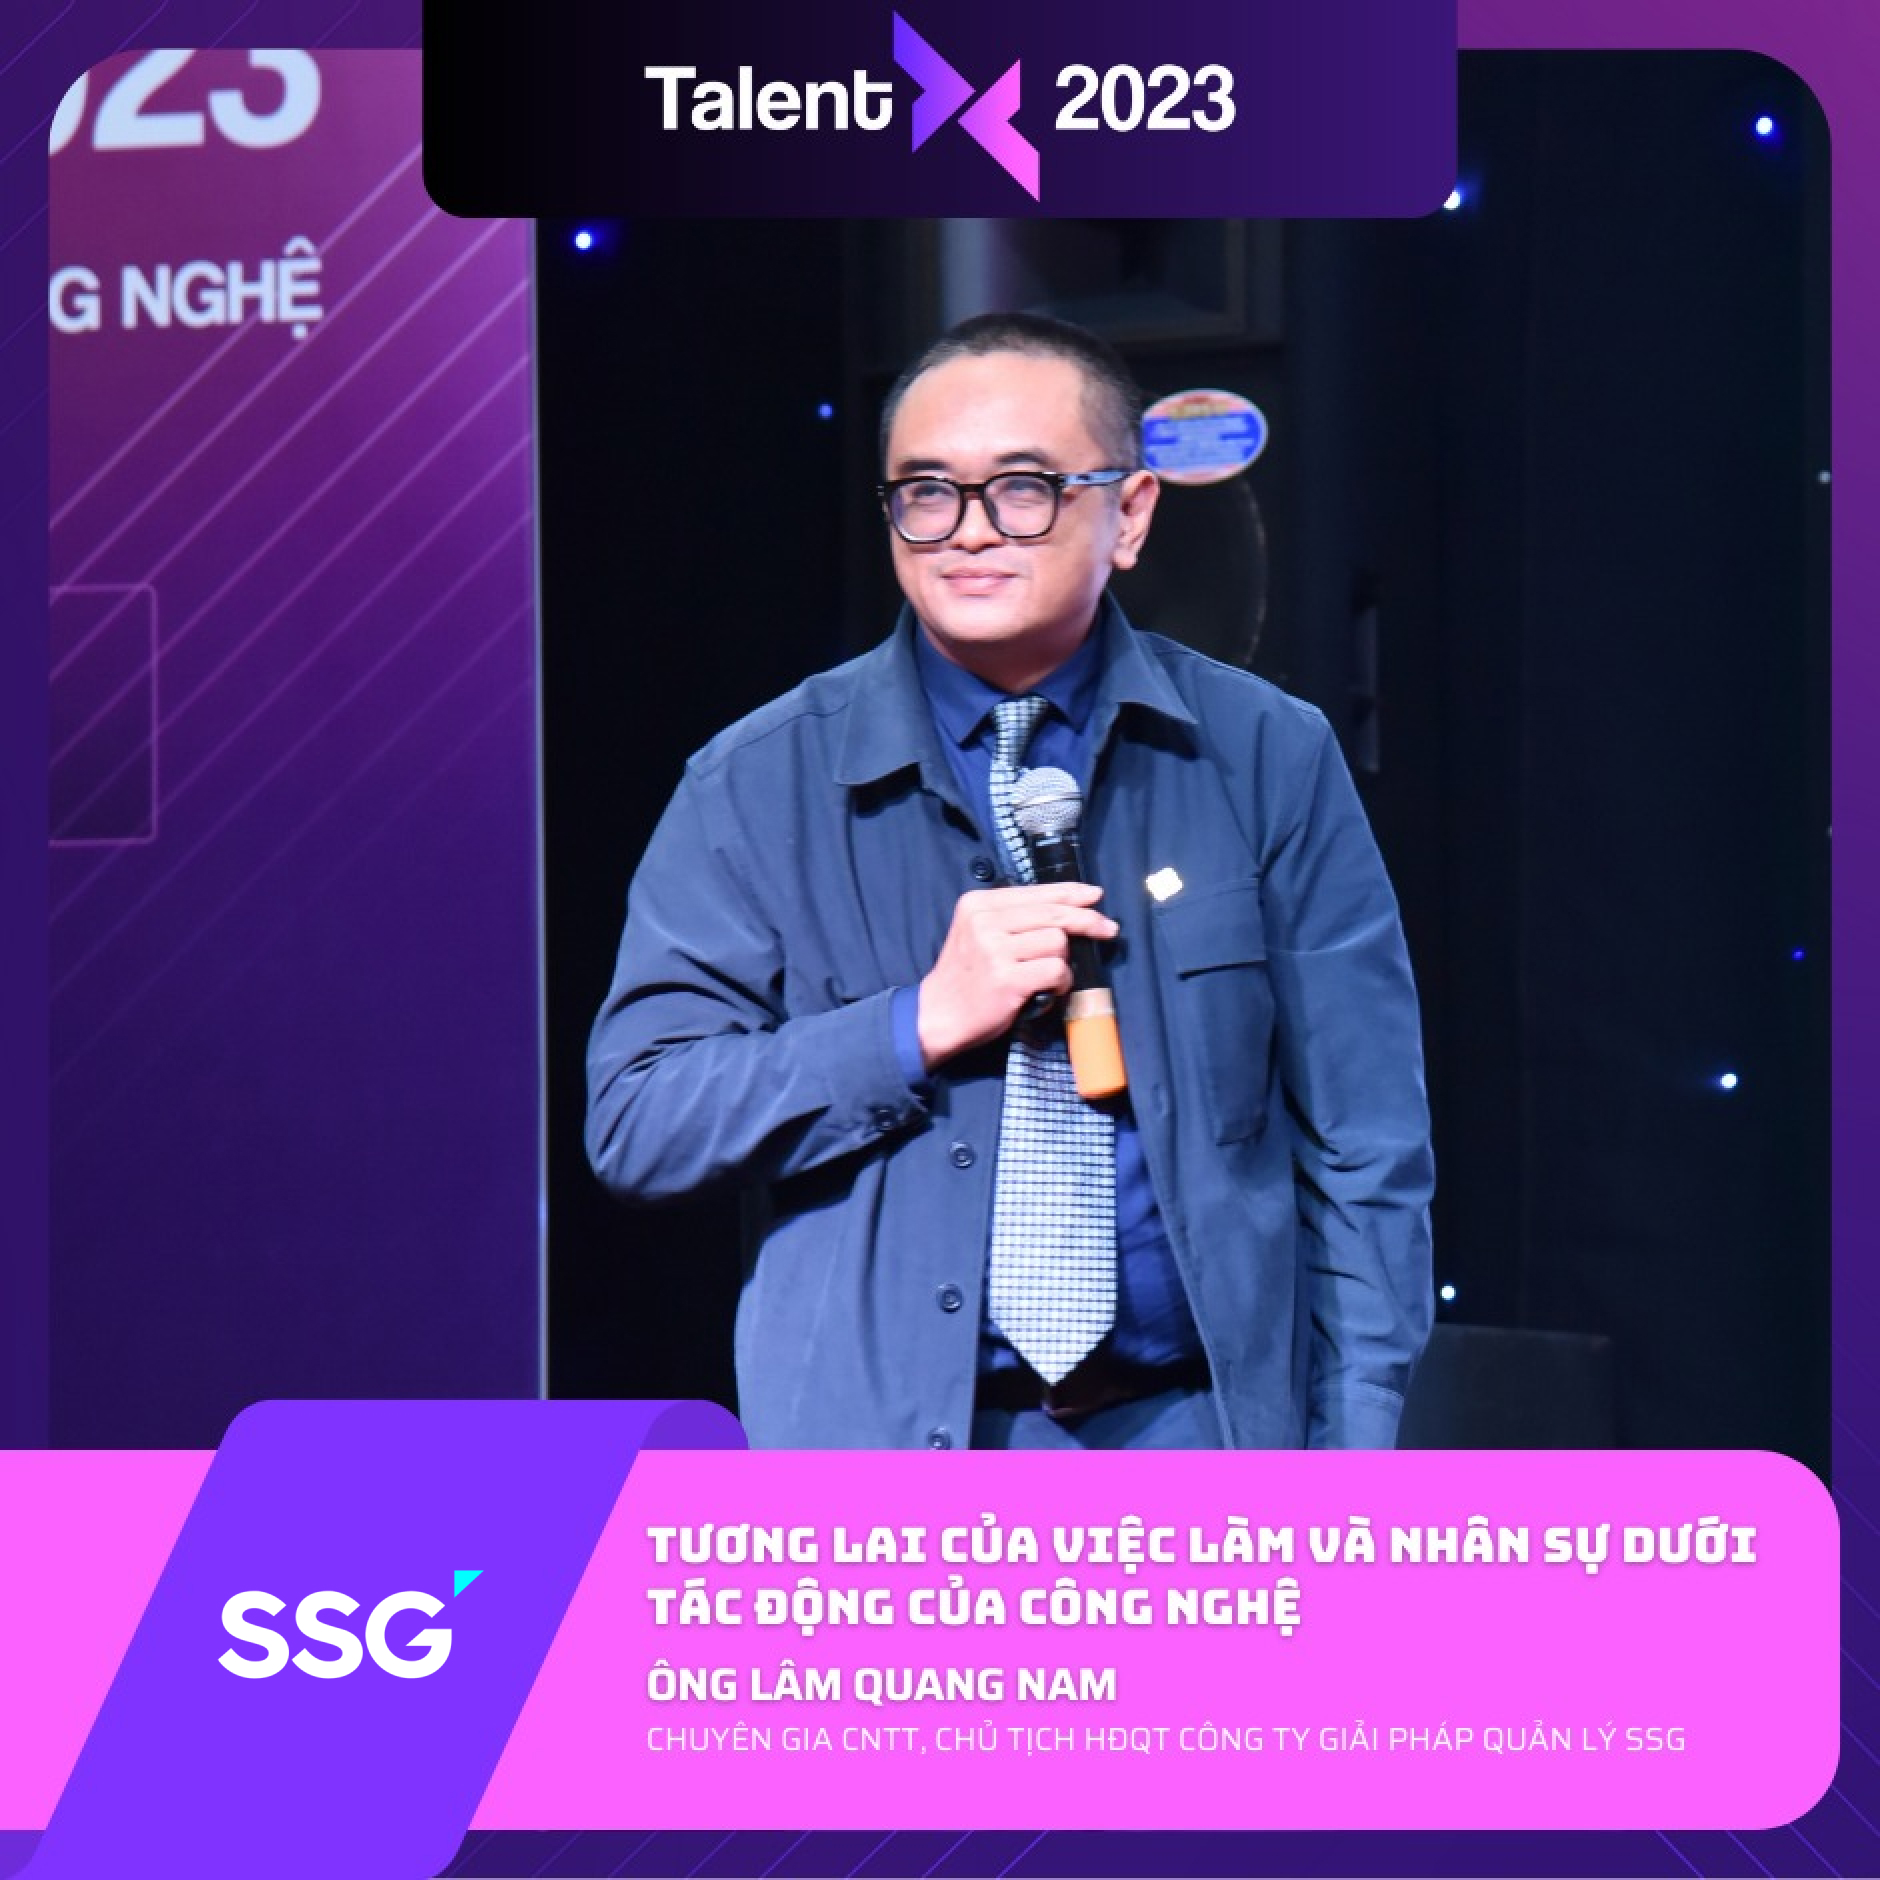 Đại diện SSG chia sẻ tại TalentX 2023: Tương lai của việc làm và nhân sự dưới tác động của công nghệ